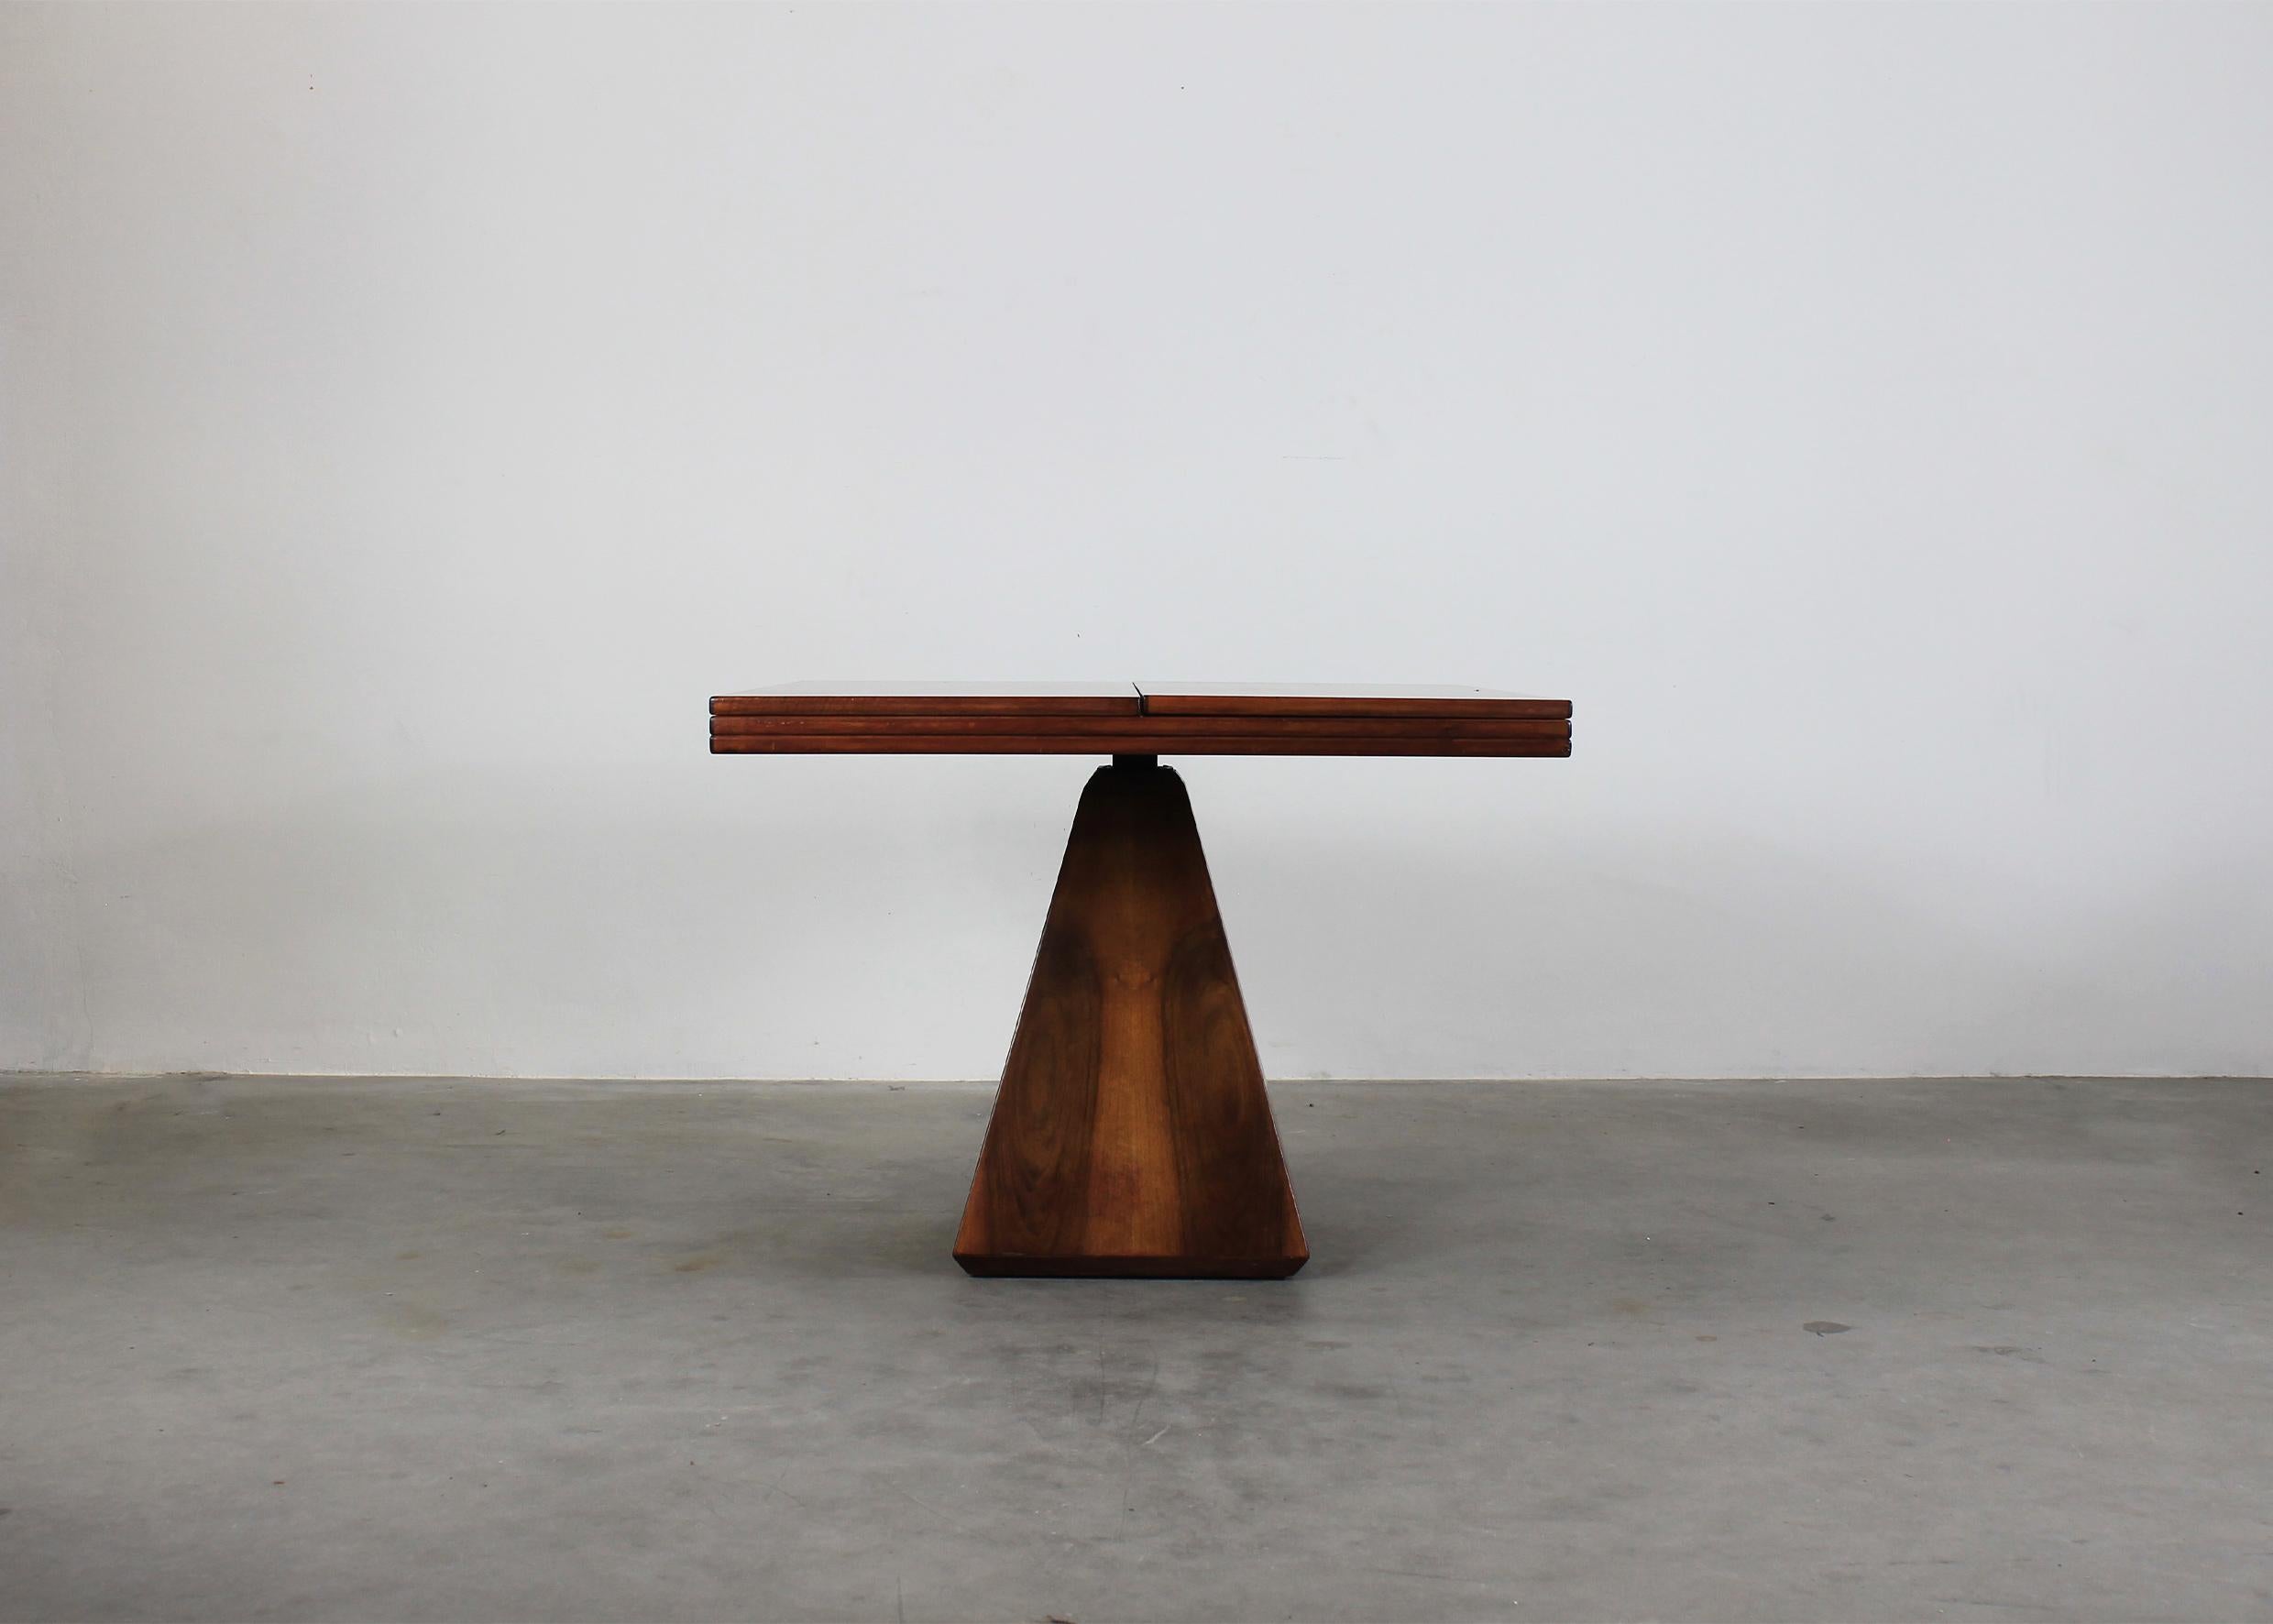 Ausziehbarer Chelsea-Esstisch mit quadratischer Tischplatte und pyramidenförmigem Untergestell, komplett aus Walnussholz und Metalldetails. 

Er wurde von Vittorio Introini entworfen und von Saporiti in den 1960er Jahren hergestellt.

Die